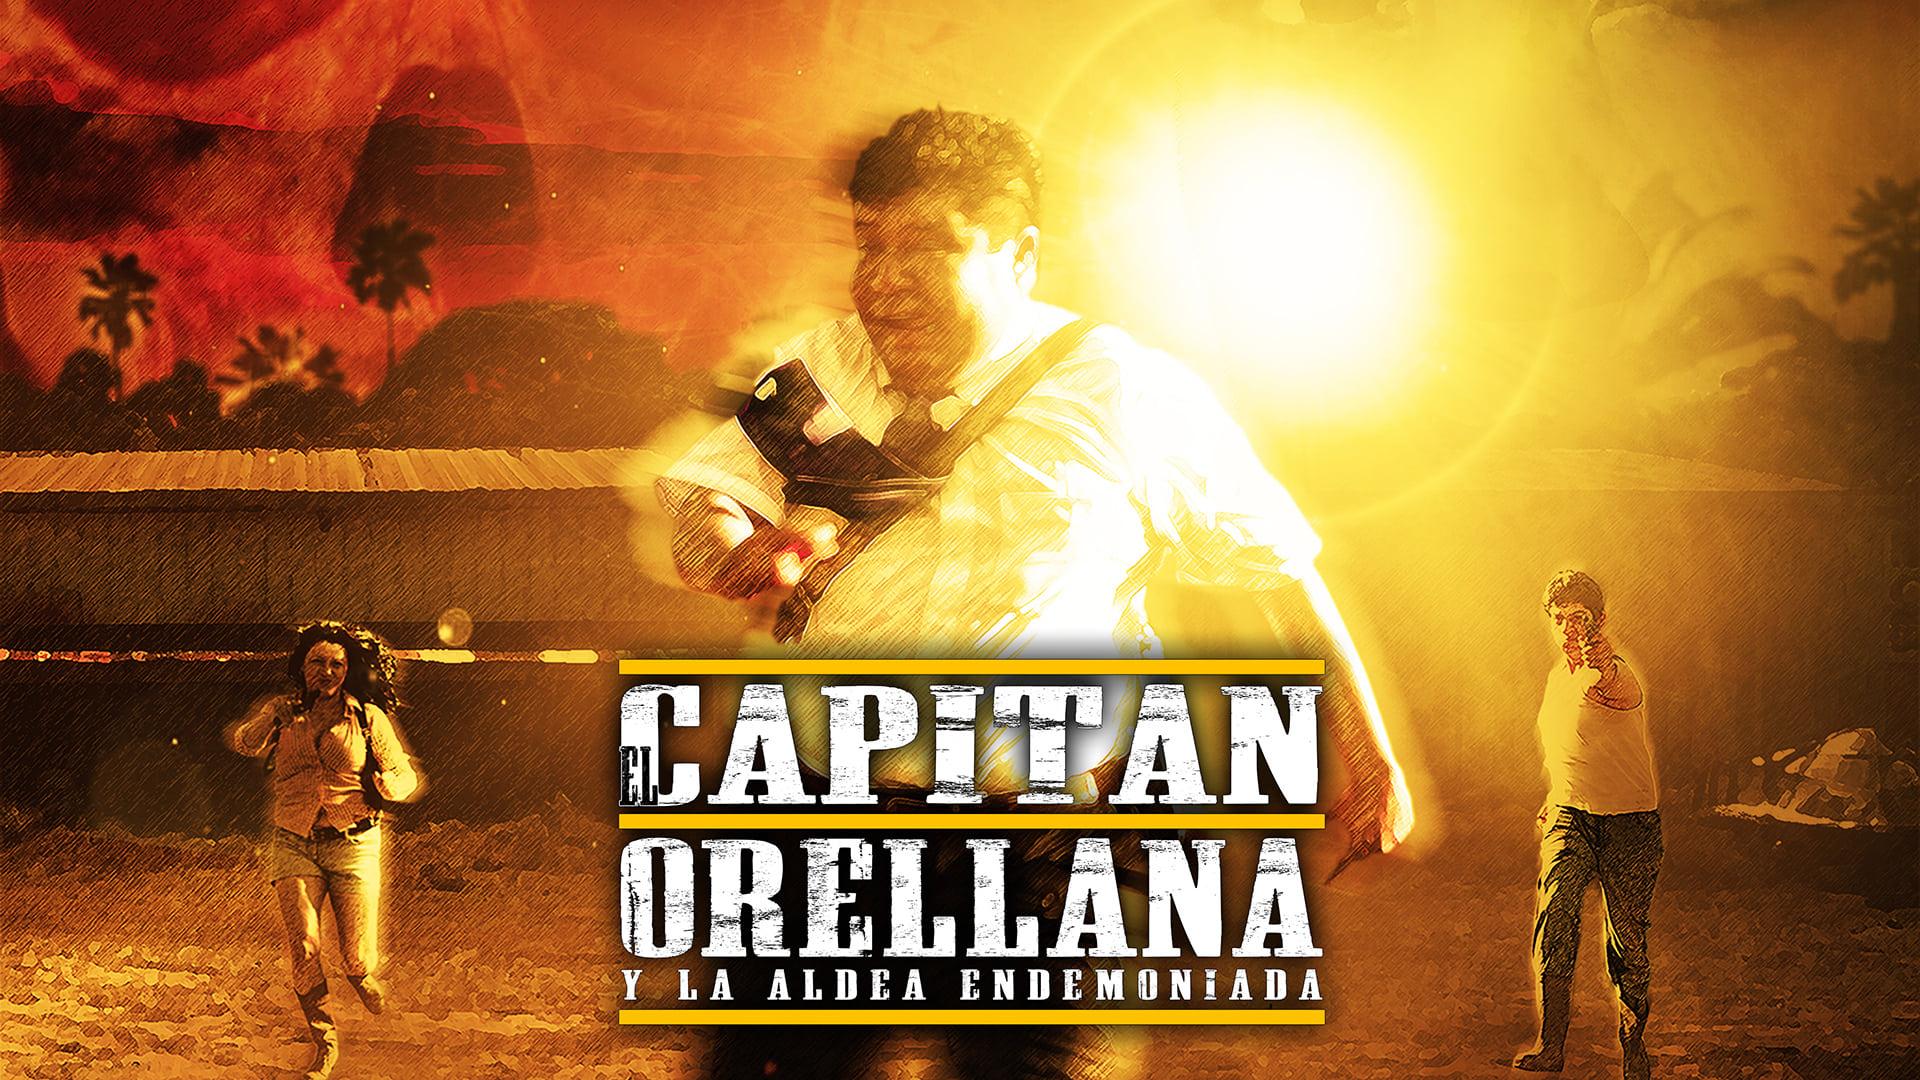 El Capitán Orellana y la Aldea Endemoniada backdrop